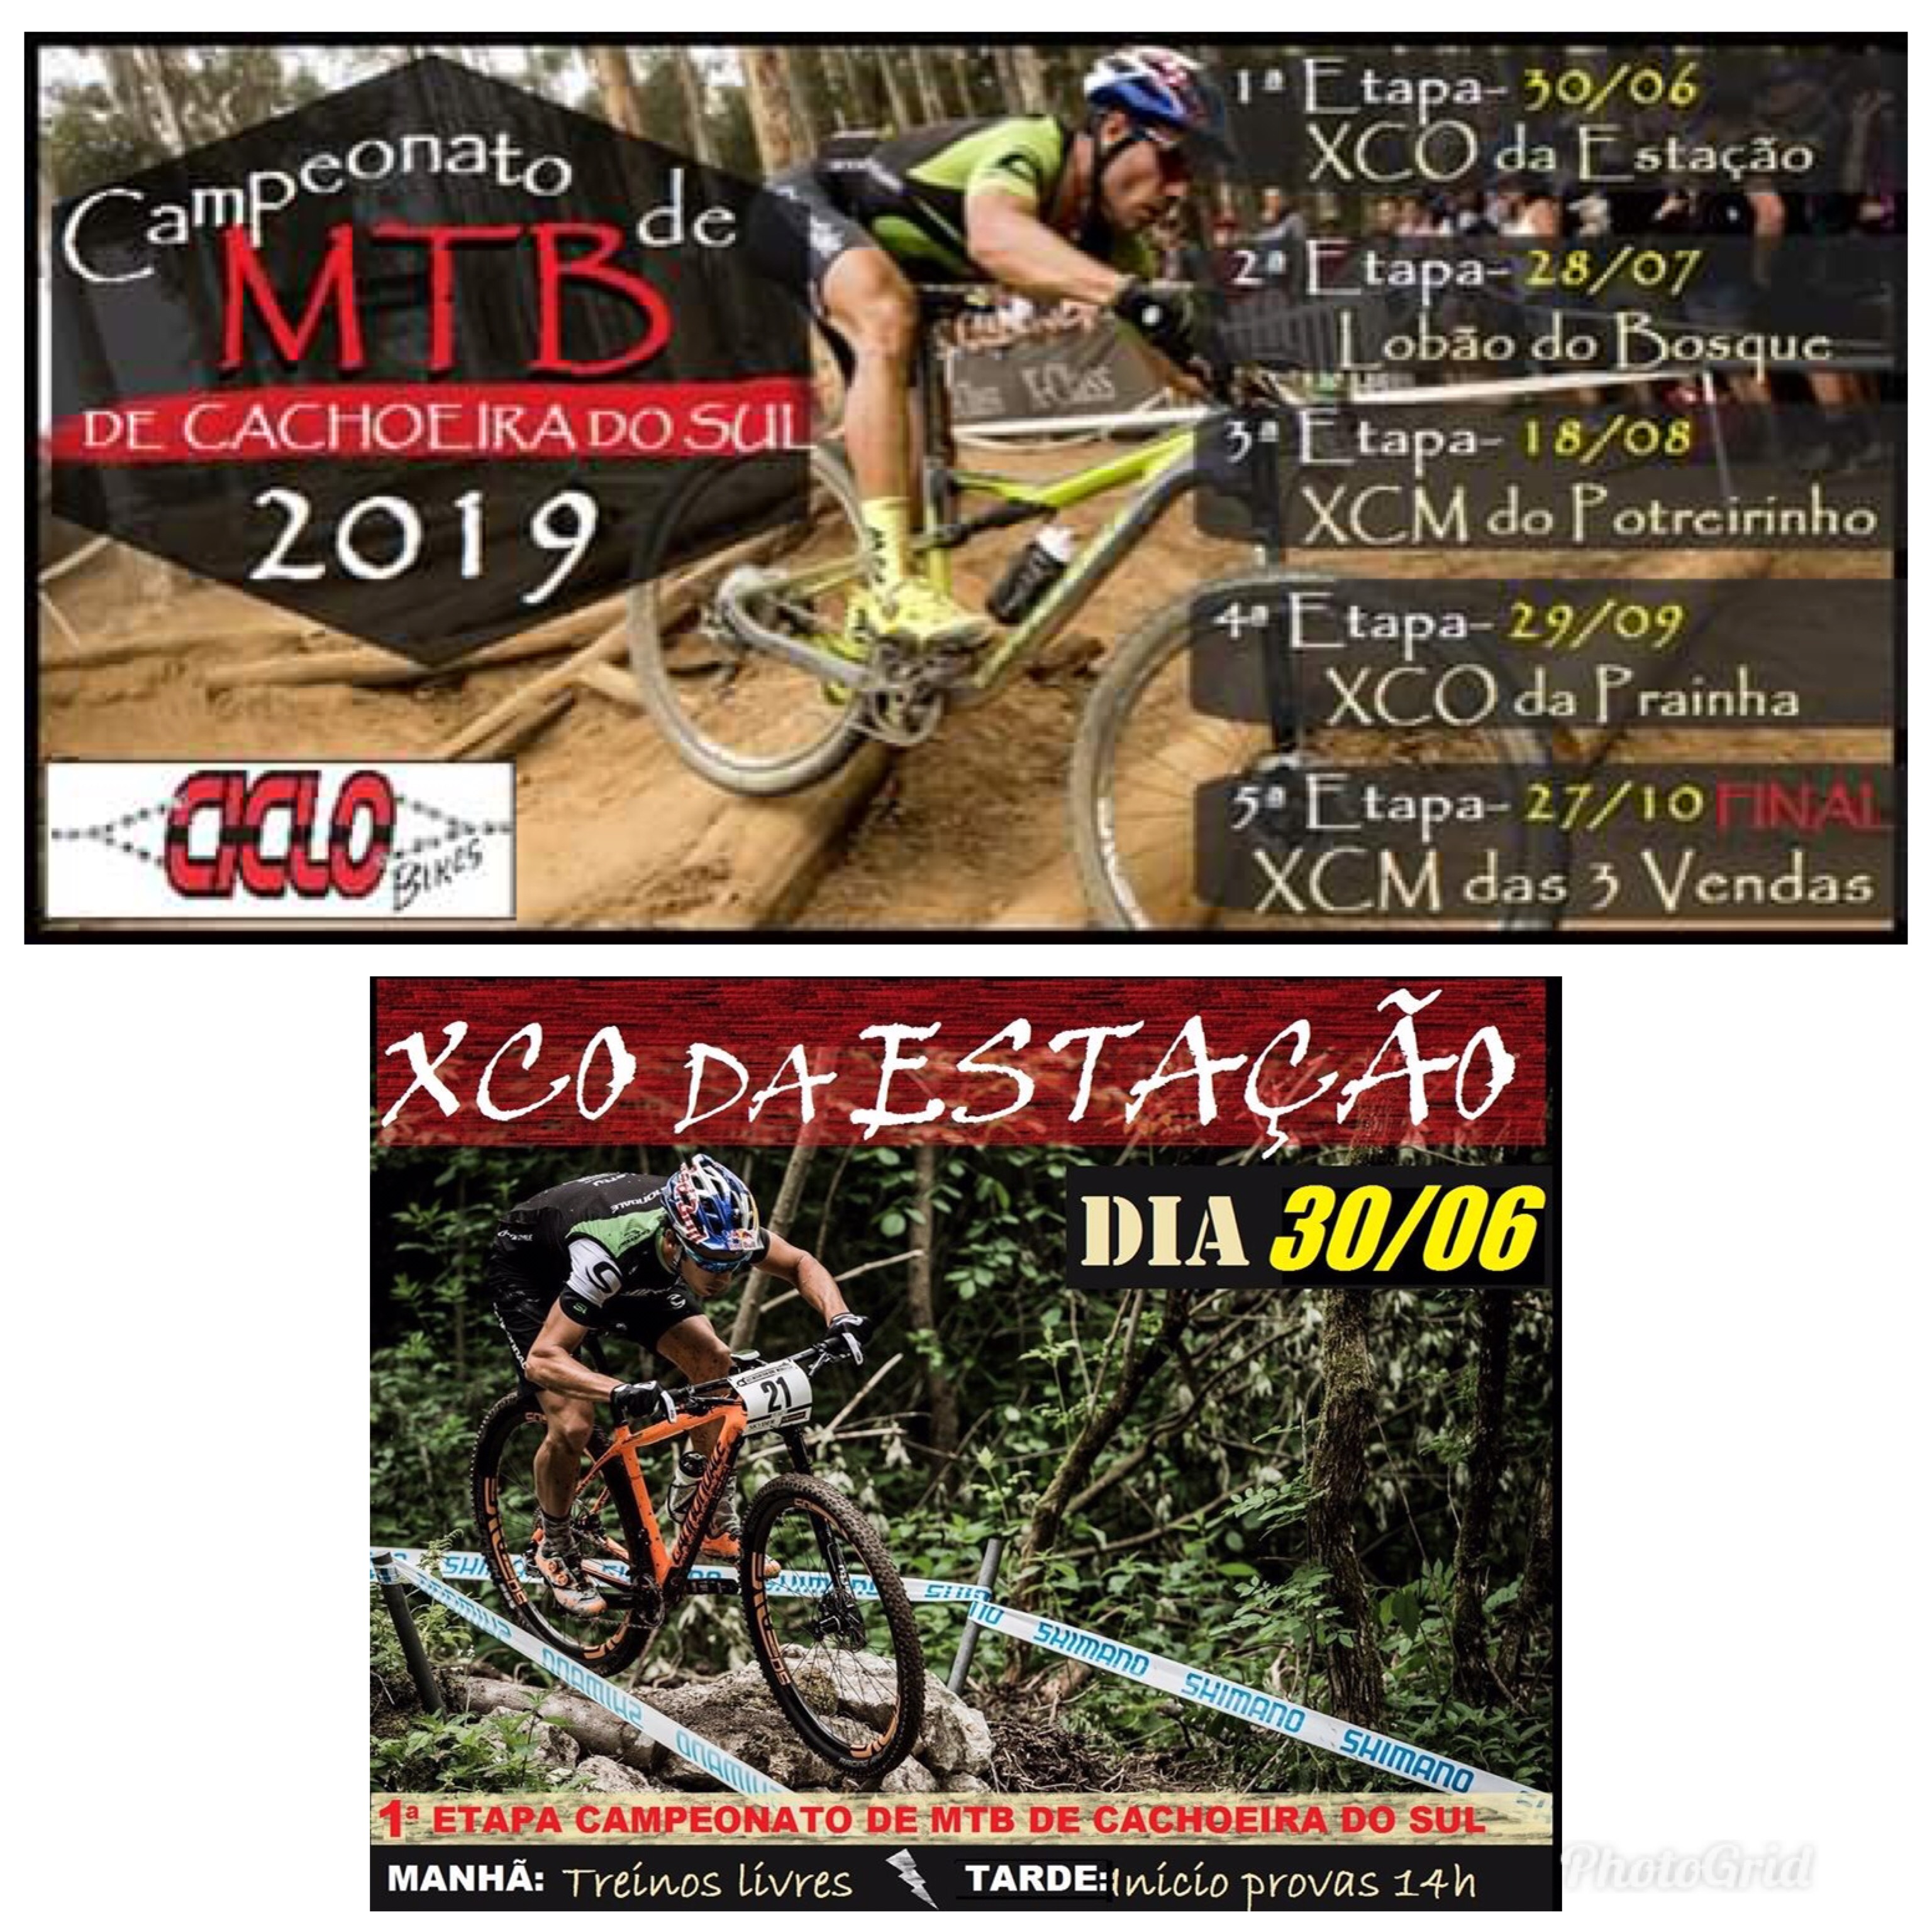 Campeonato de MTB de Cachoeira do Sul - XCO da Estação